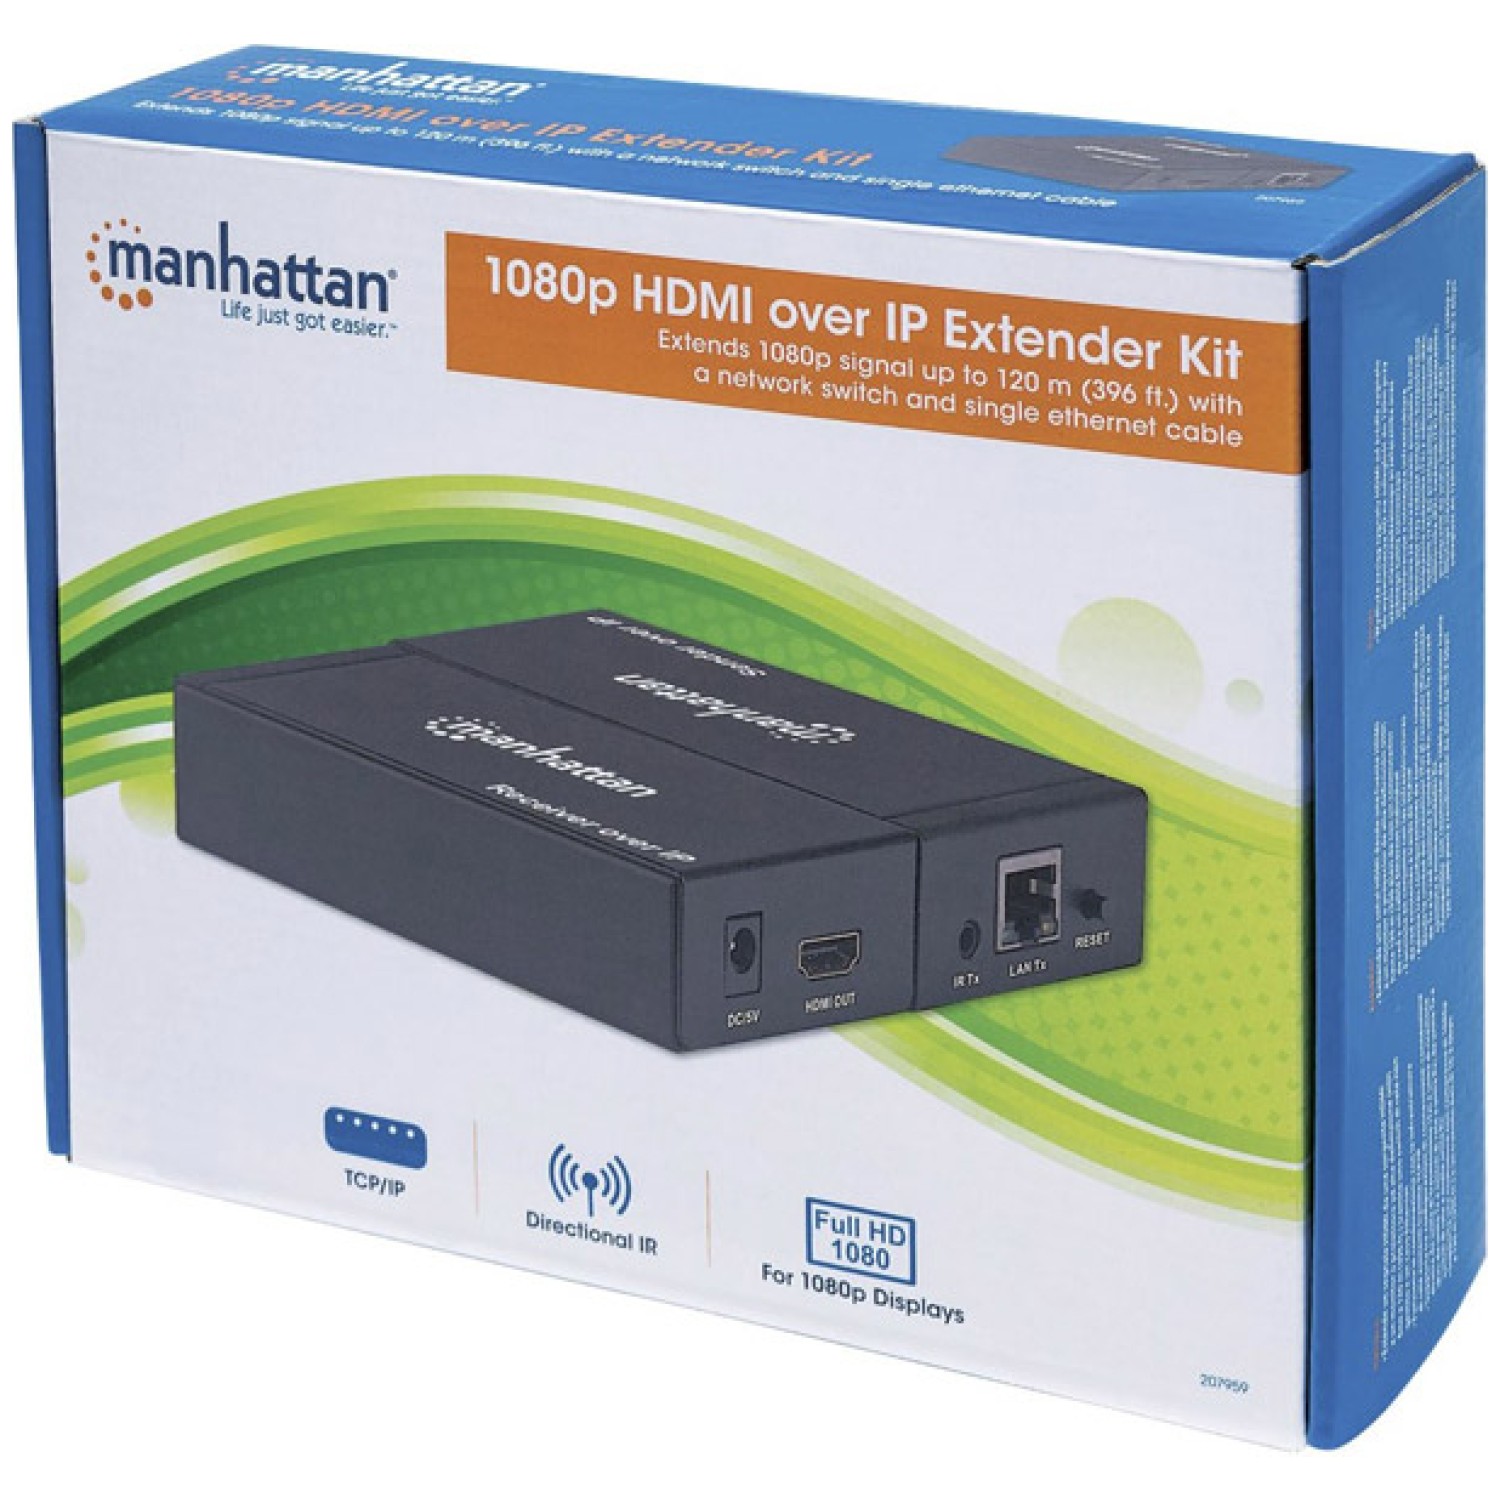 preprosto razširi signal visoke ločljivosti (HD) prek omrežja IP z enim ethernetnim kablom. Manhattan 1080p HDMI over IP Extender Kit je idealna rešitev za povezovanje praktično katerega koli digitalnega vira HDMI (PlayStation